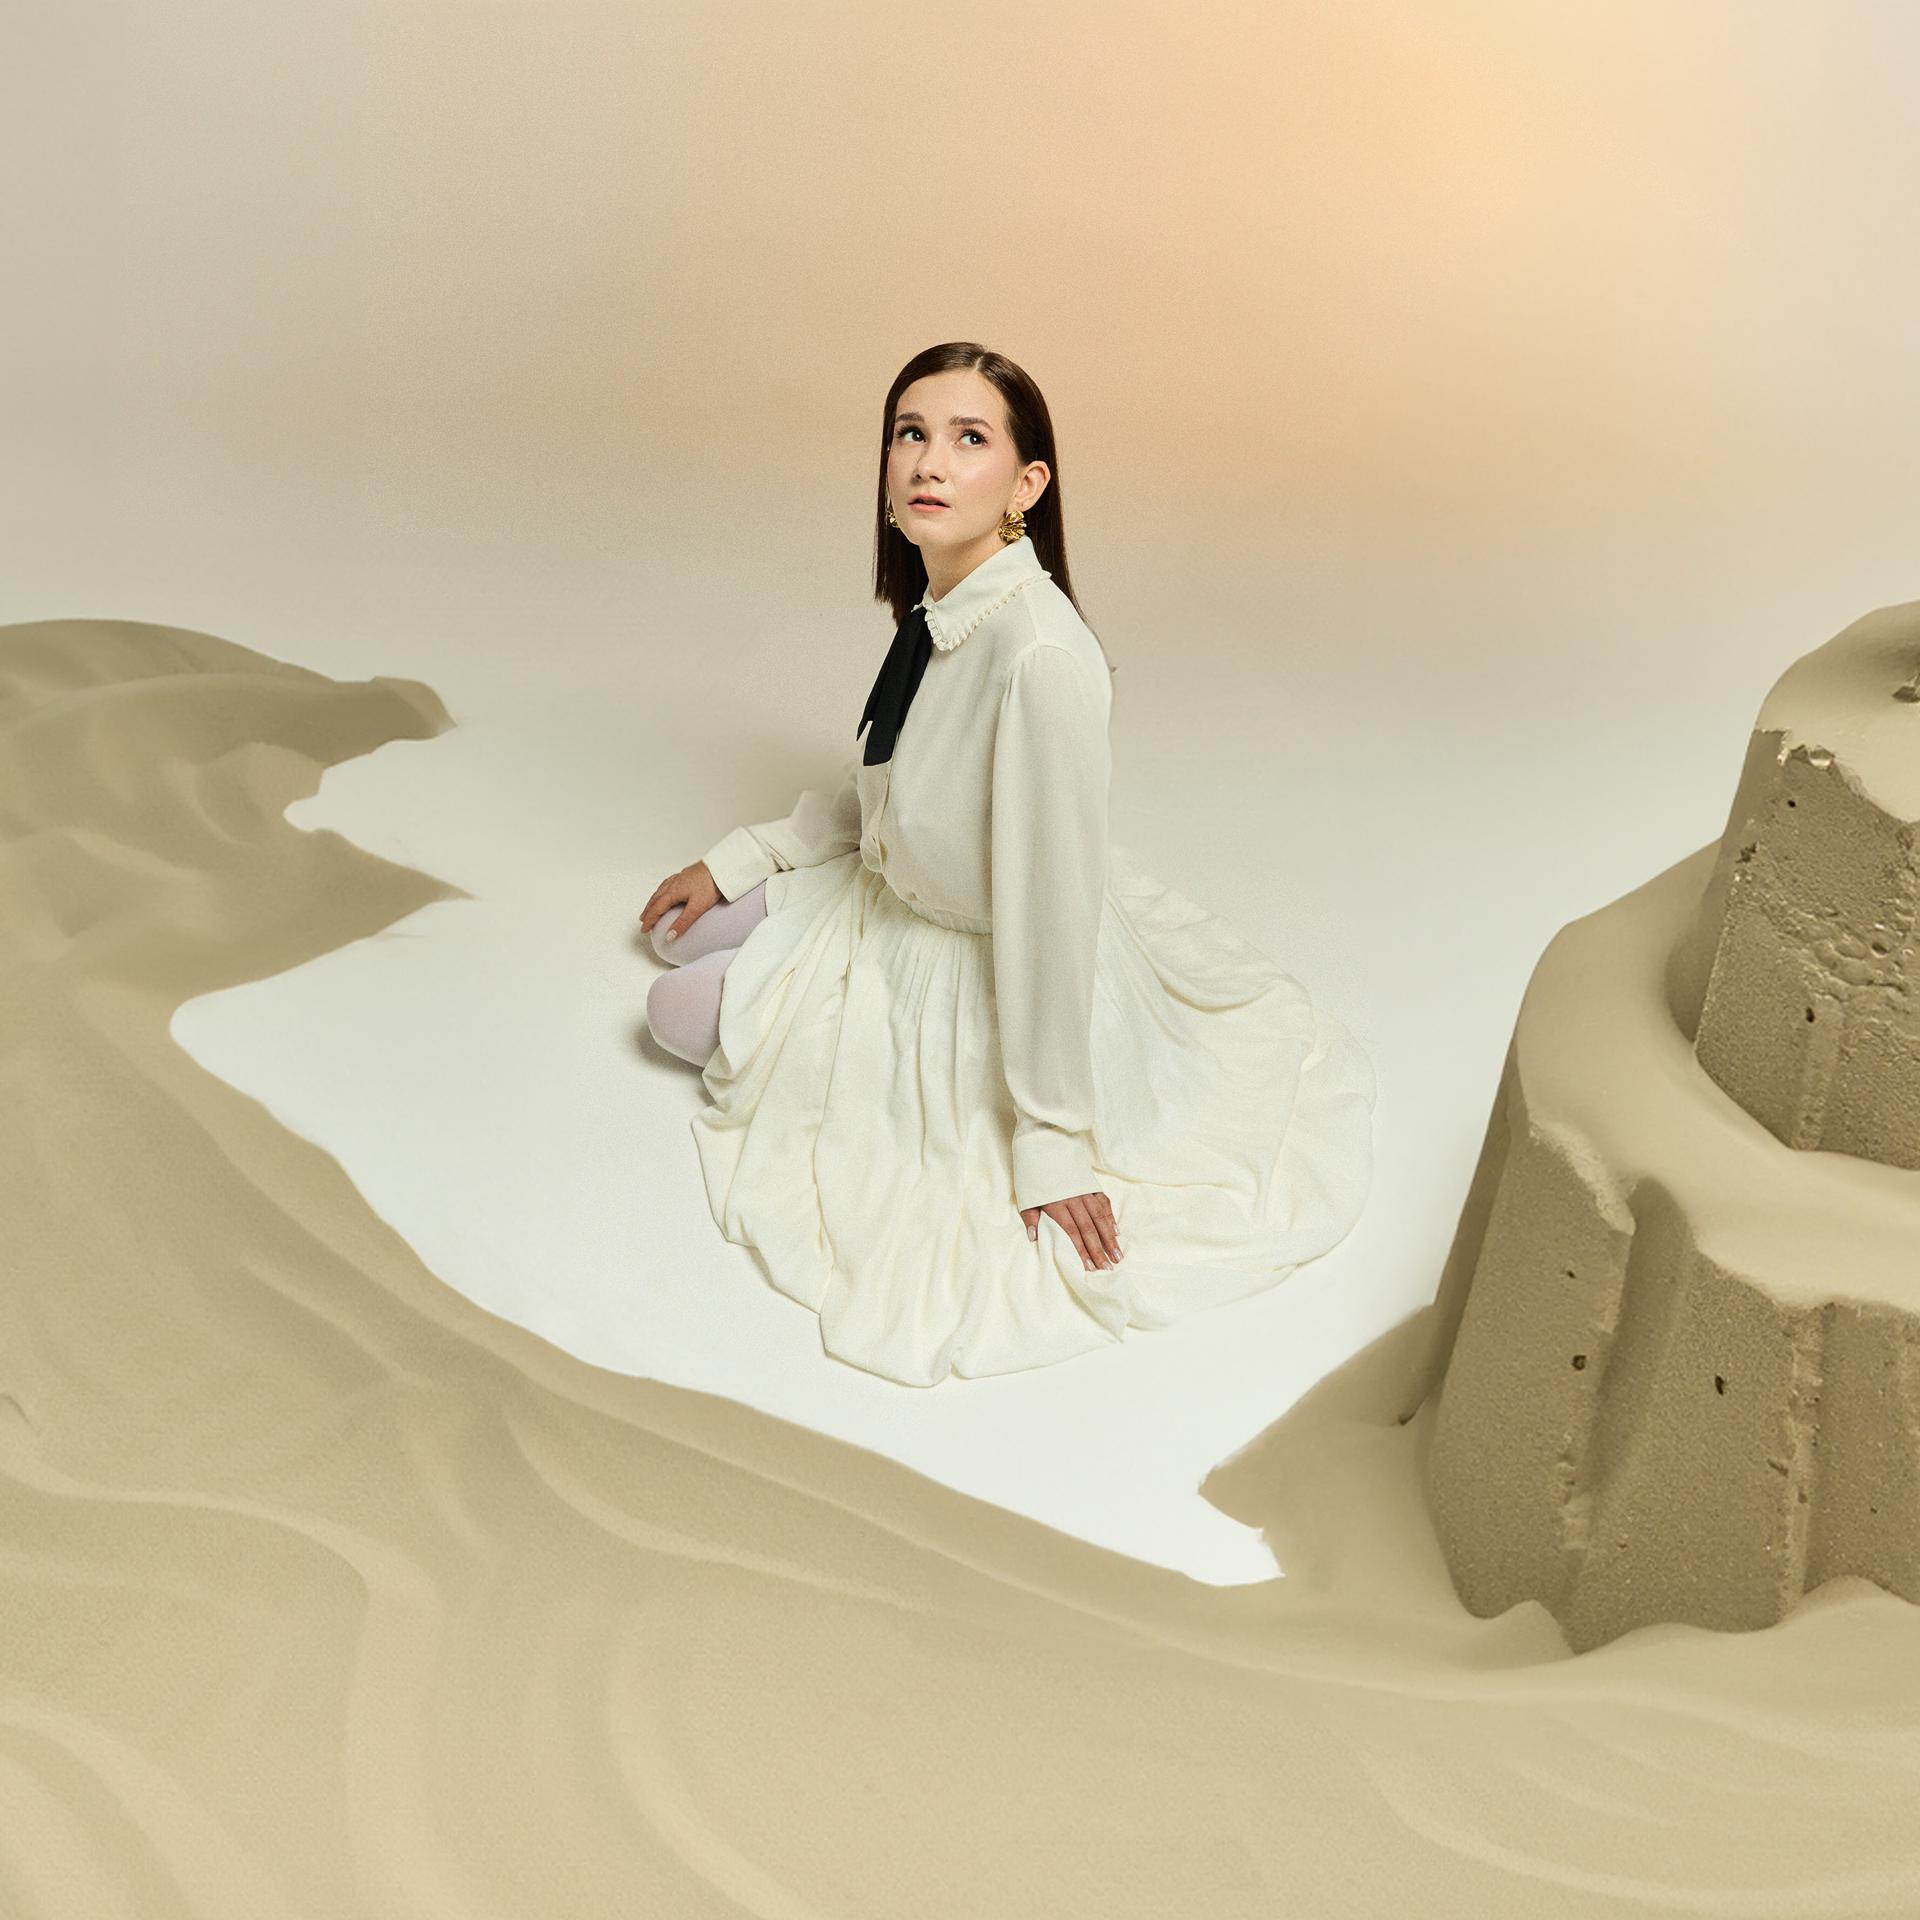 Постер альбома Замок из песка